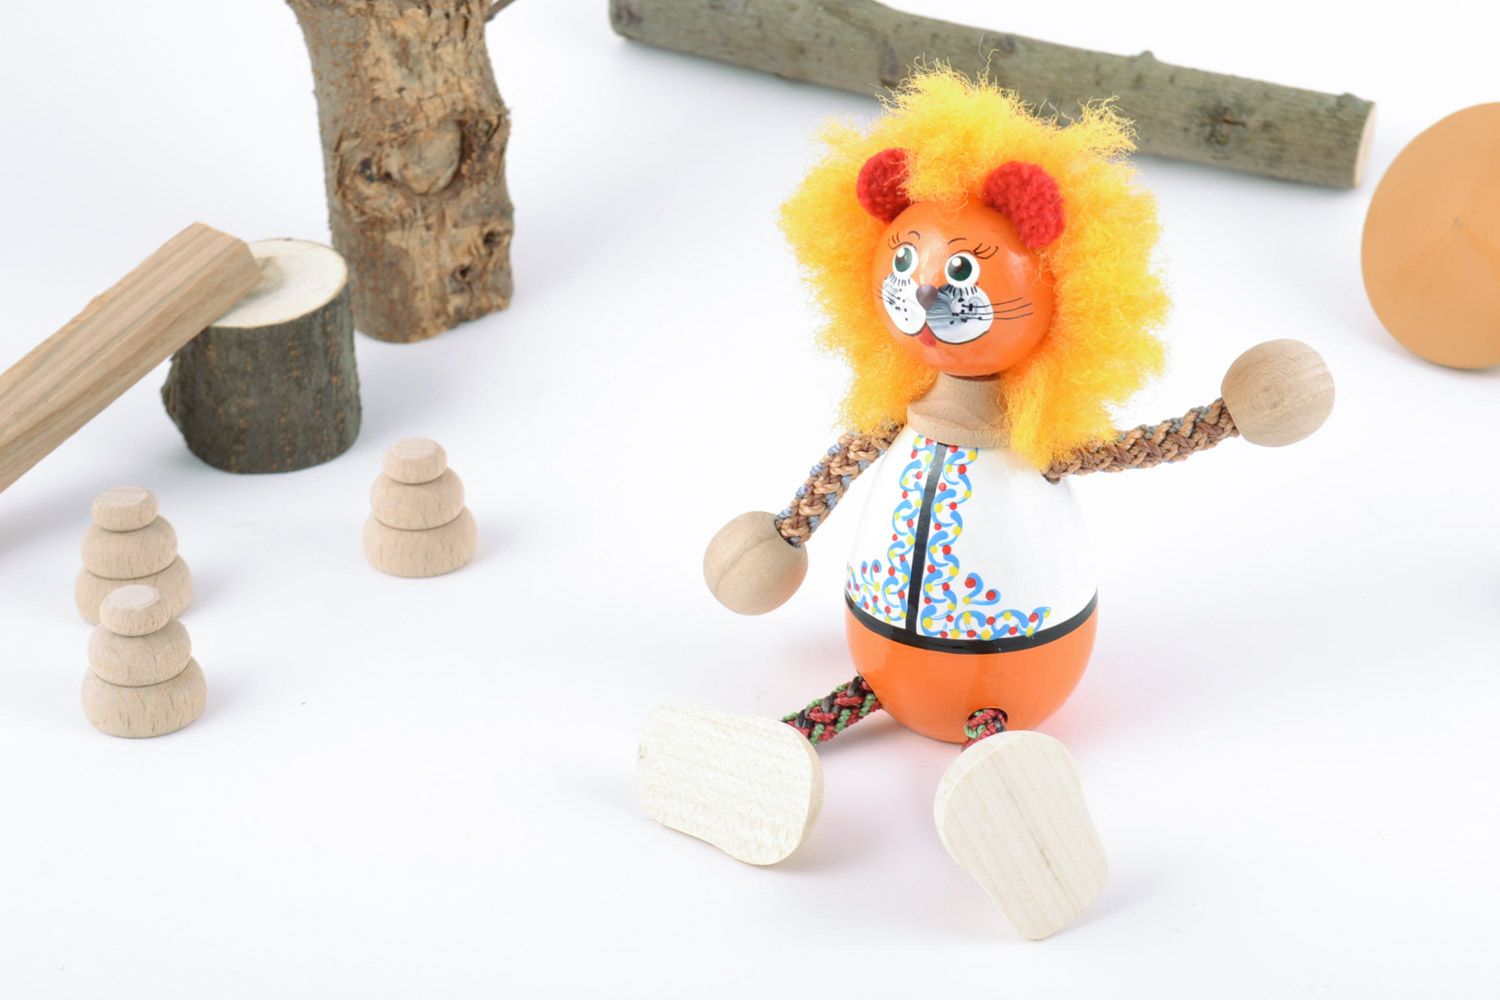 Яркая деревянная игрушка в виде льва расписная красками вручную для декора и игр фото 1